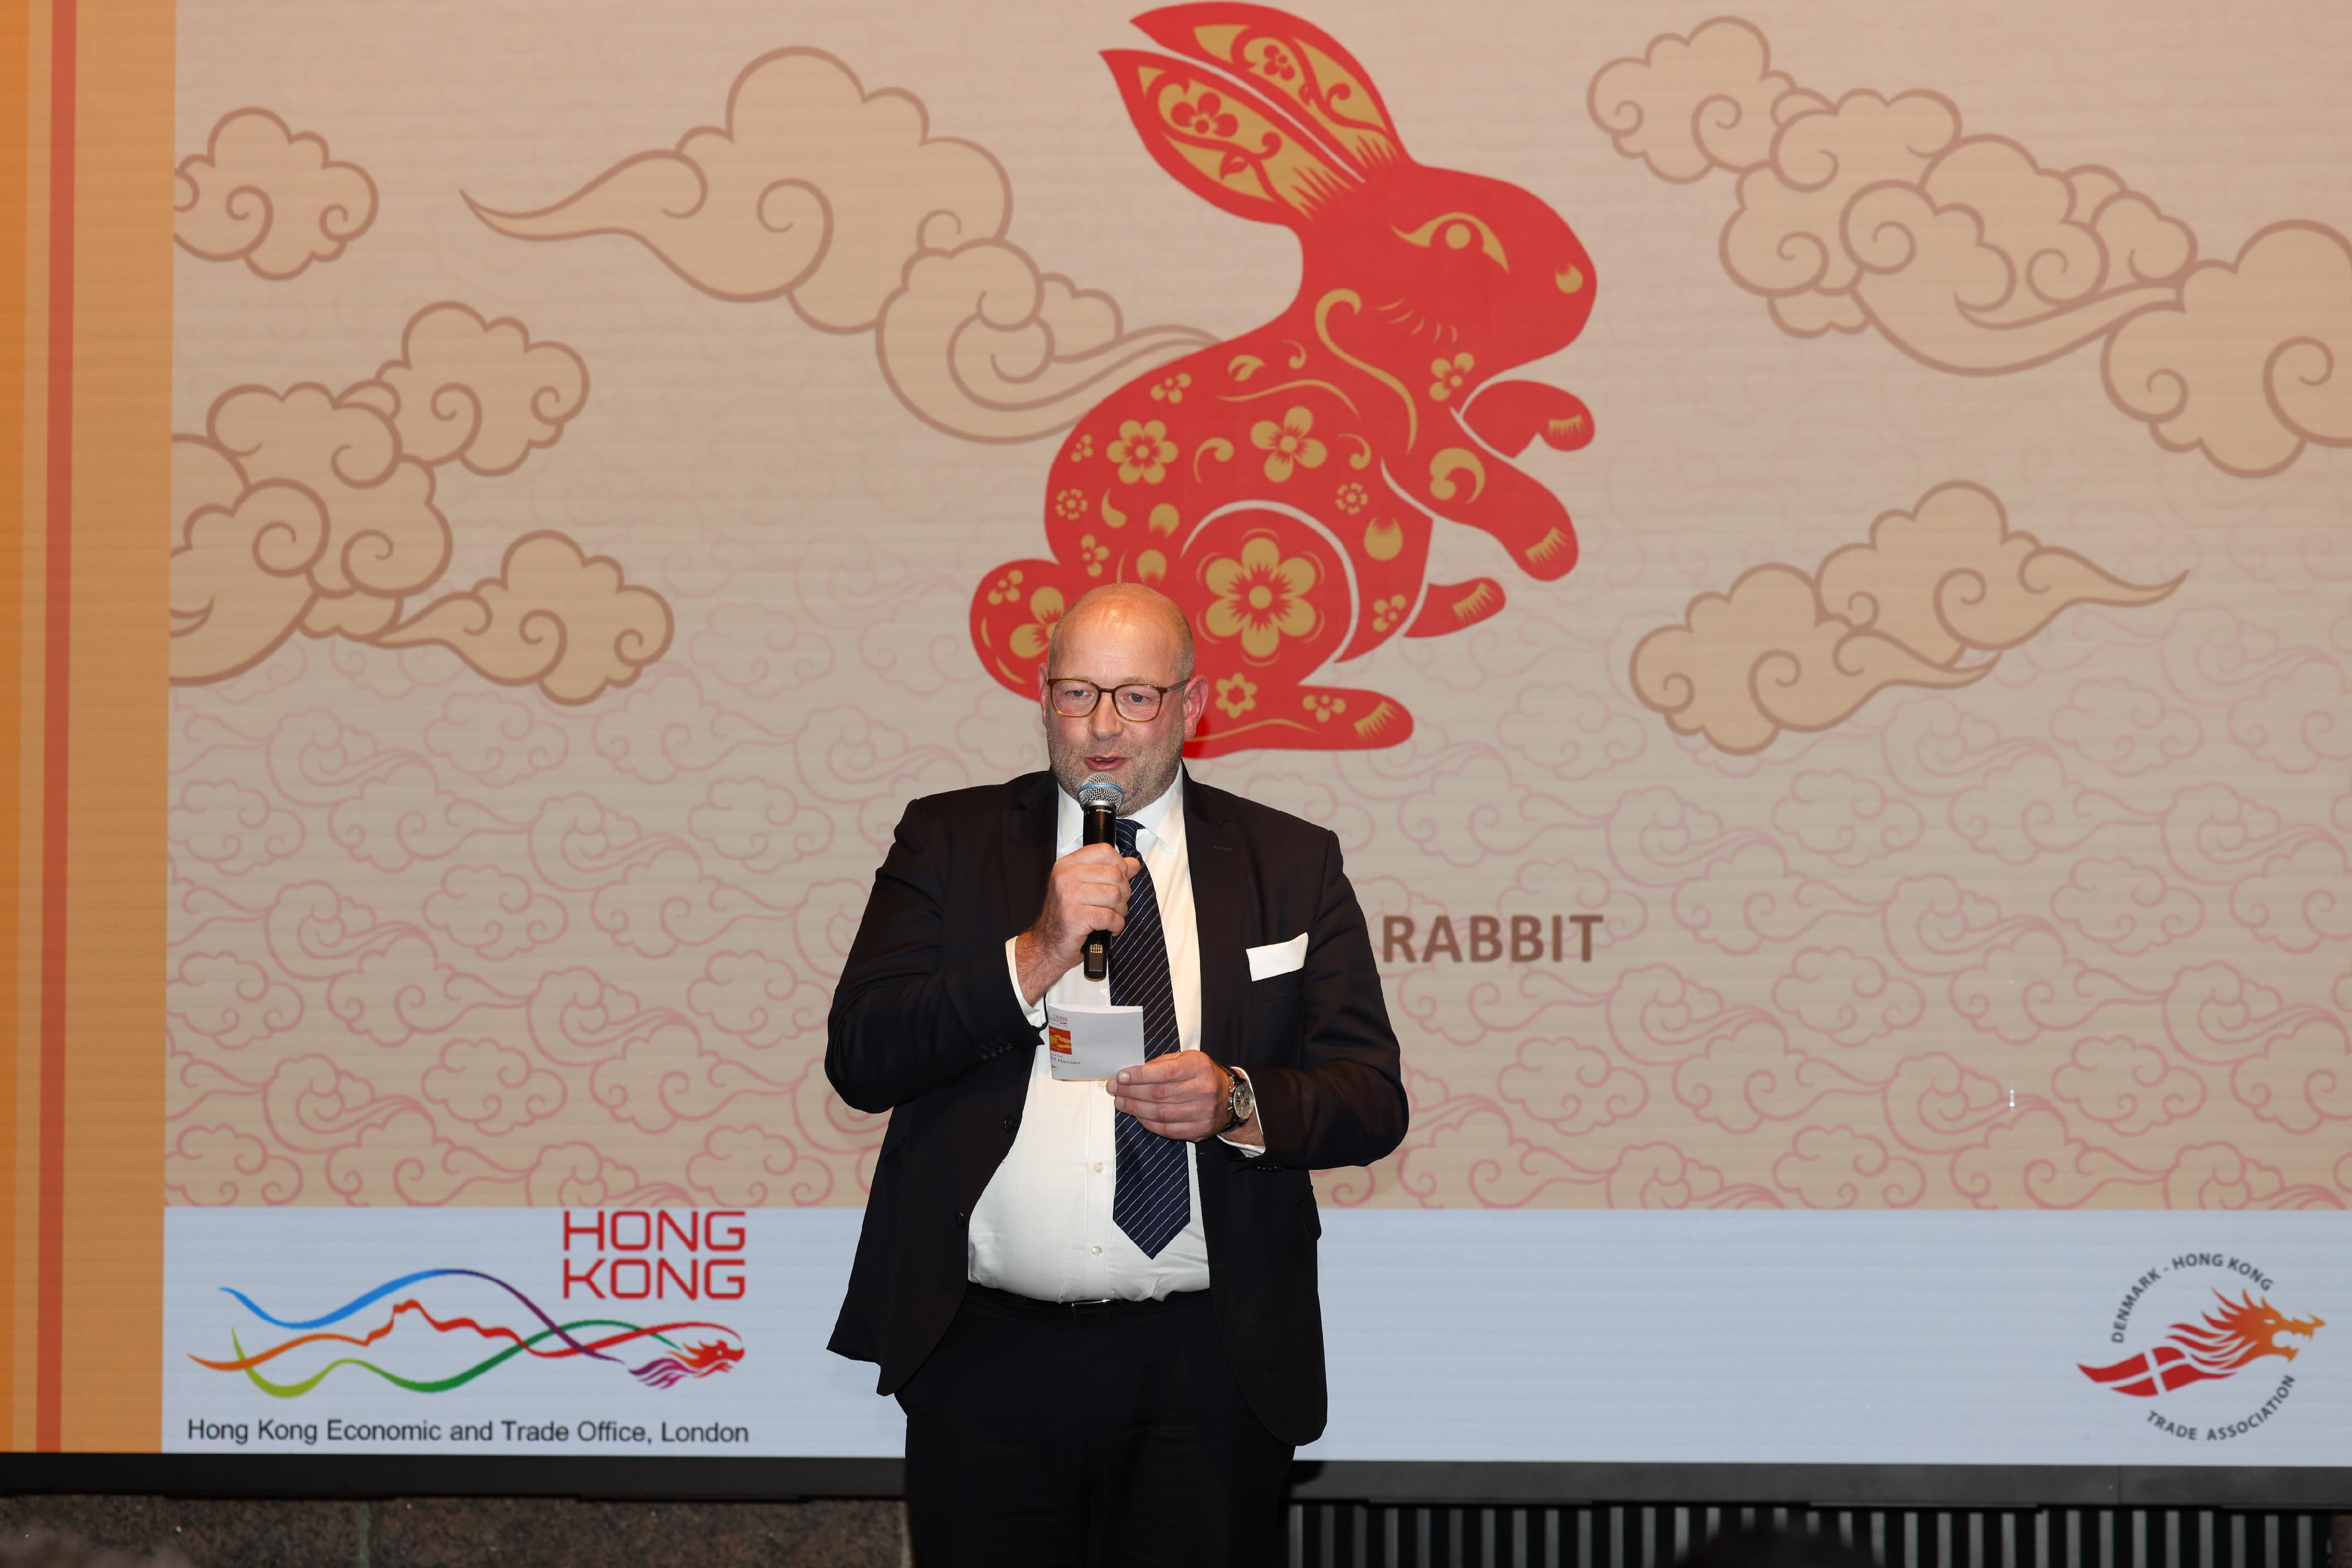 香港駐倫敦經濟貿易辦事處分別於二月七日及八日在丹麥哥本哈根及瑞典斯德哥爾摩與當地商會合辦酒會慶祝兔年。圖示丹麥—香港貿易協會主席Nikolaj Juhl Hansen 在哥本哈根酒會致辭。